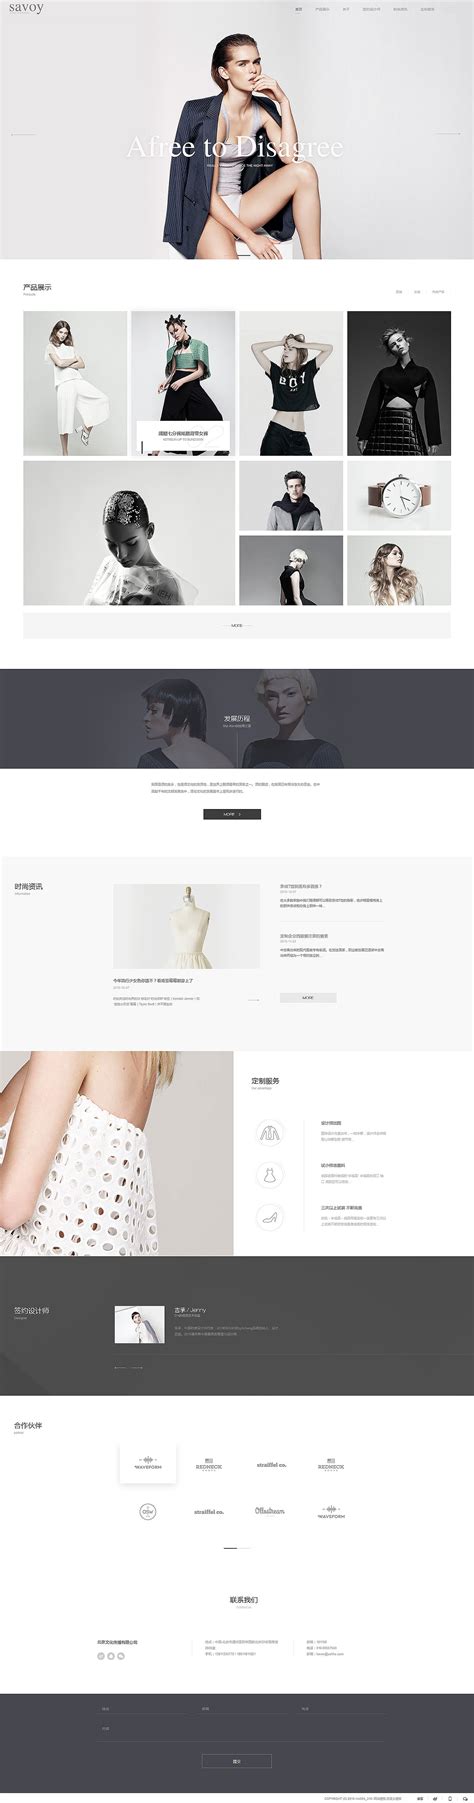 珠海服装类网站产品 - 珠海网站设计制作公司 - 超凡科技